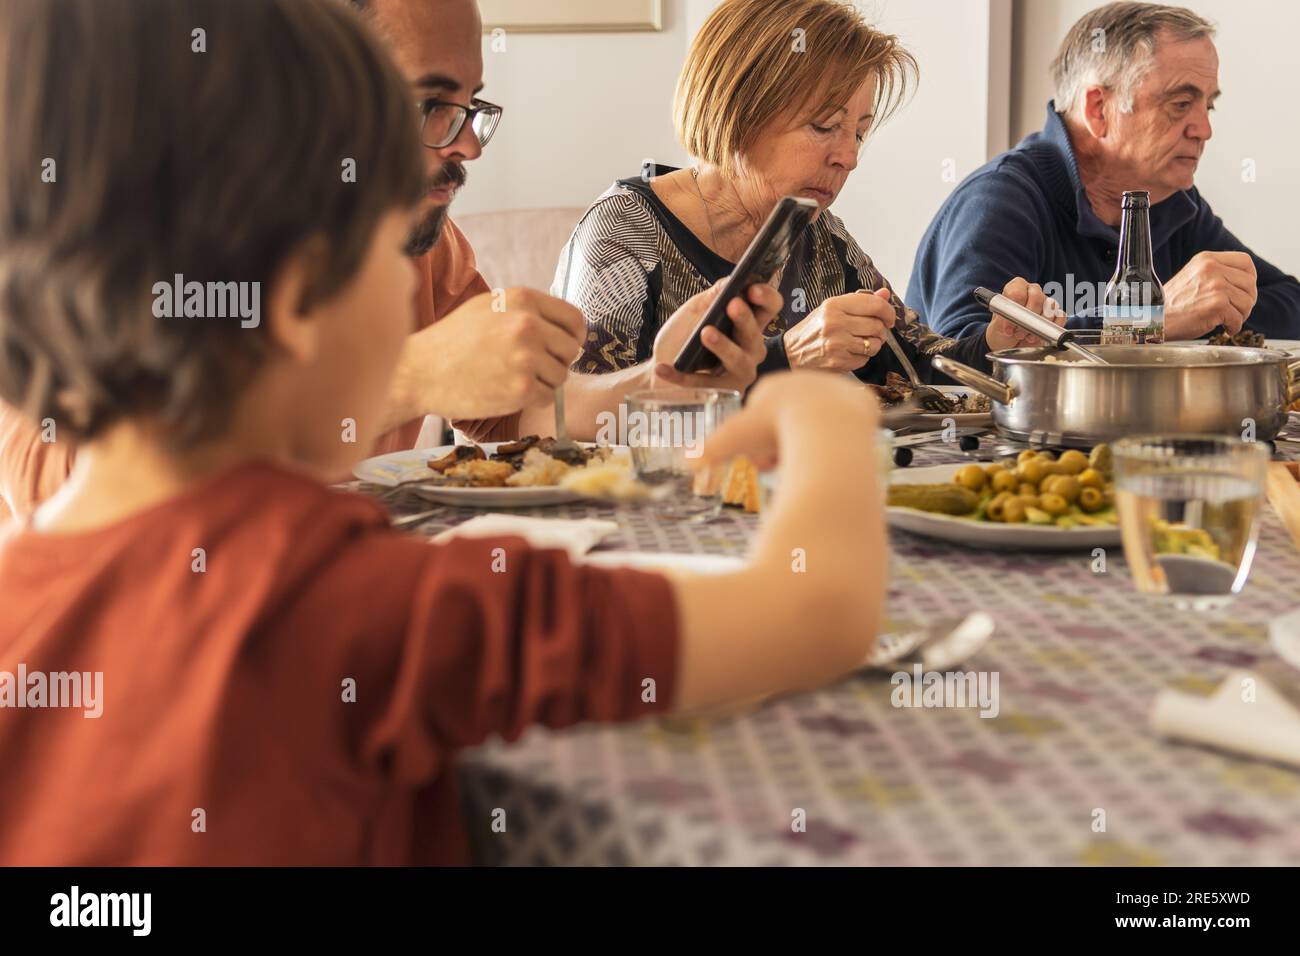 controllo del telefono cellulare durante il pranzo e mancanza di comunicazione nelle famiglie Foto Stock